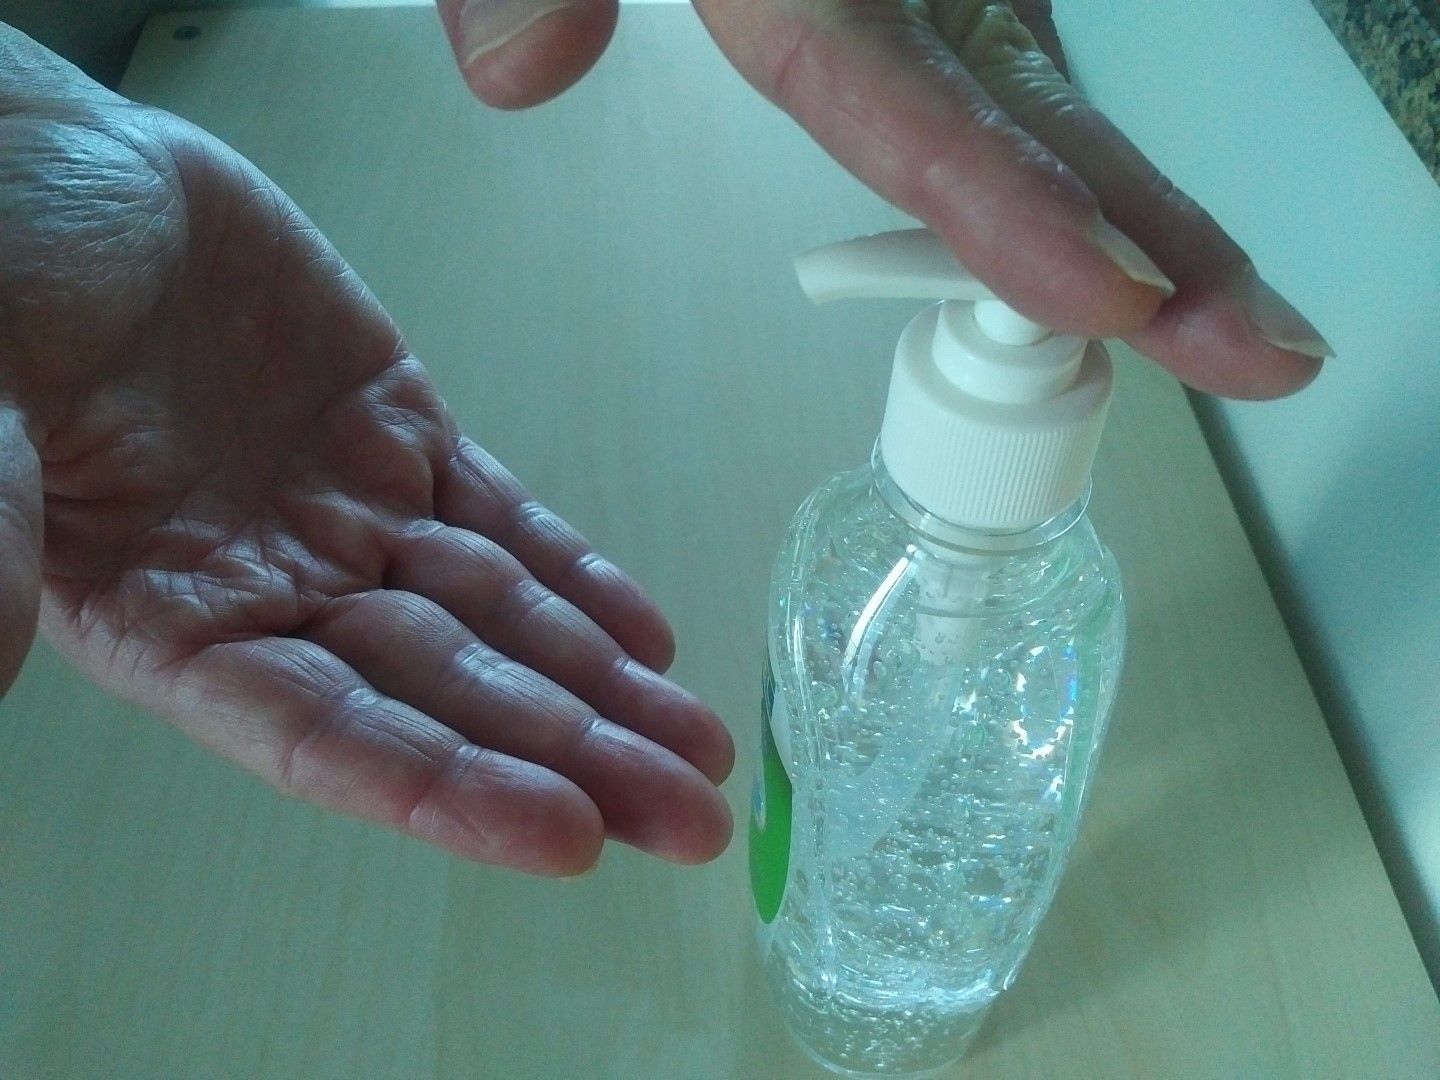 Home made hand sanitiser